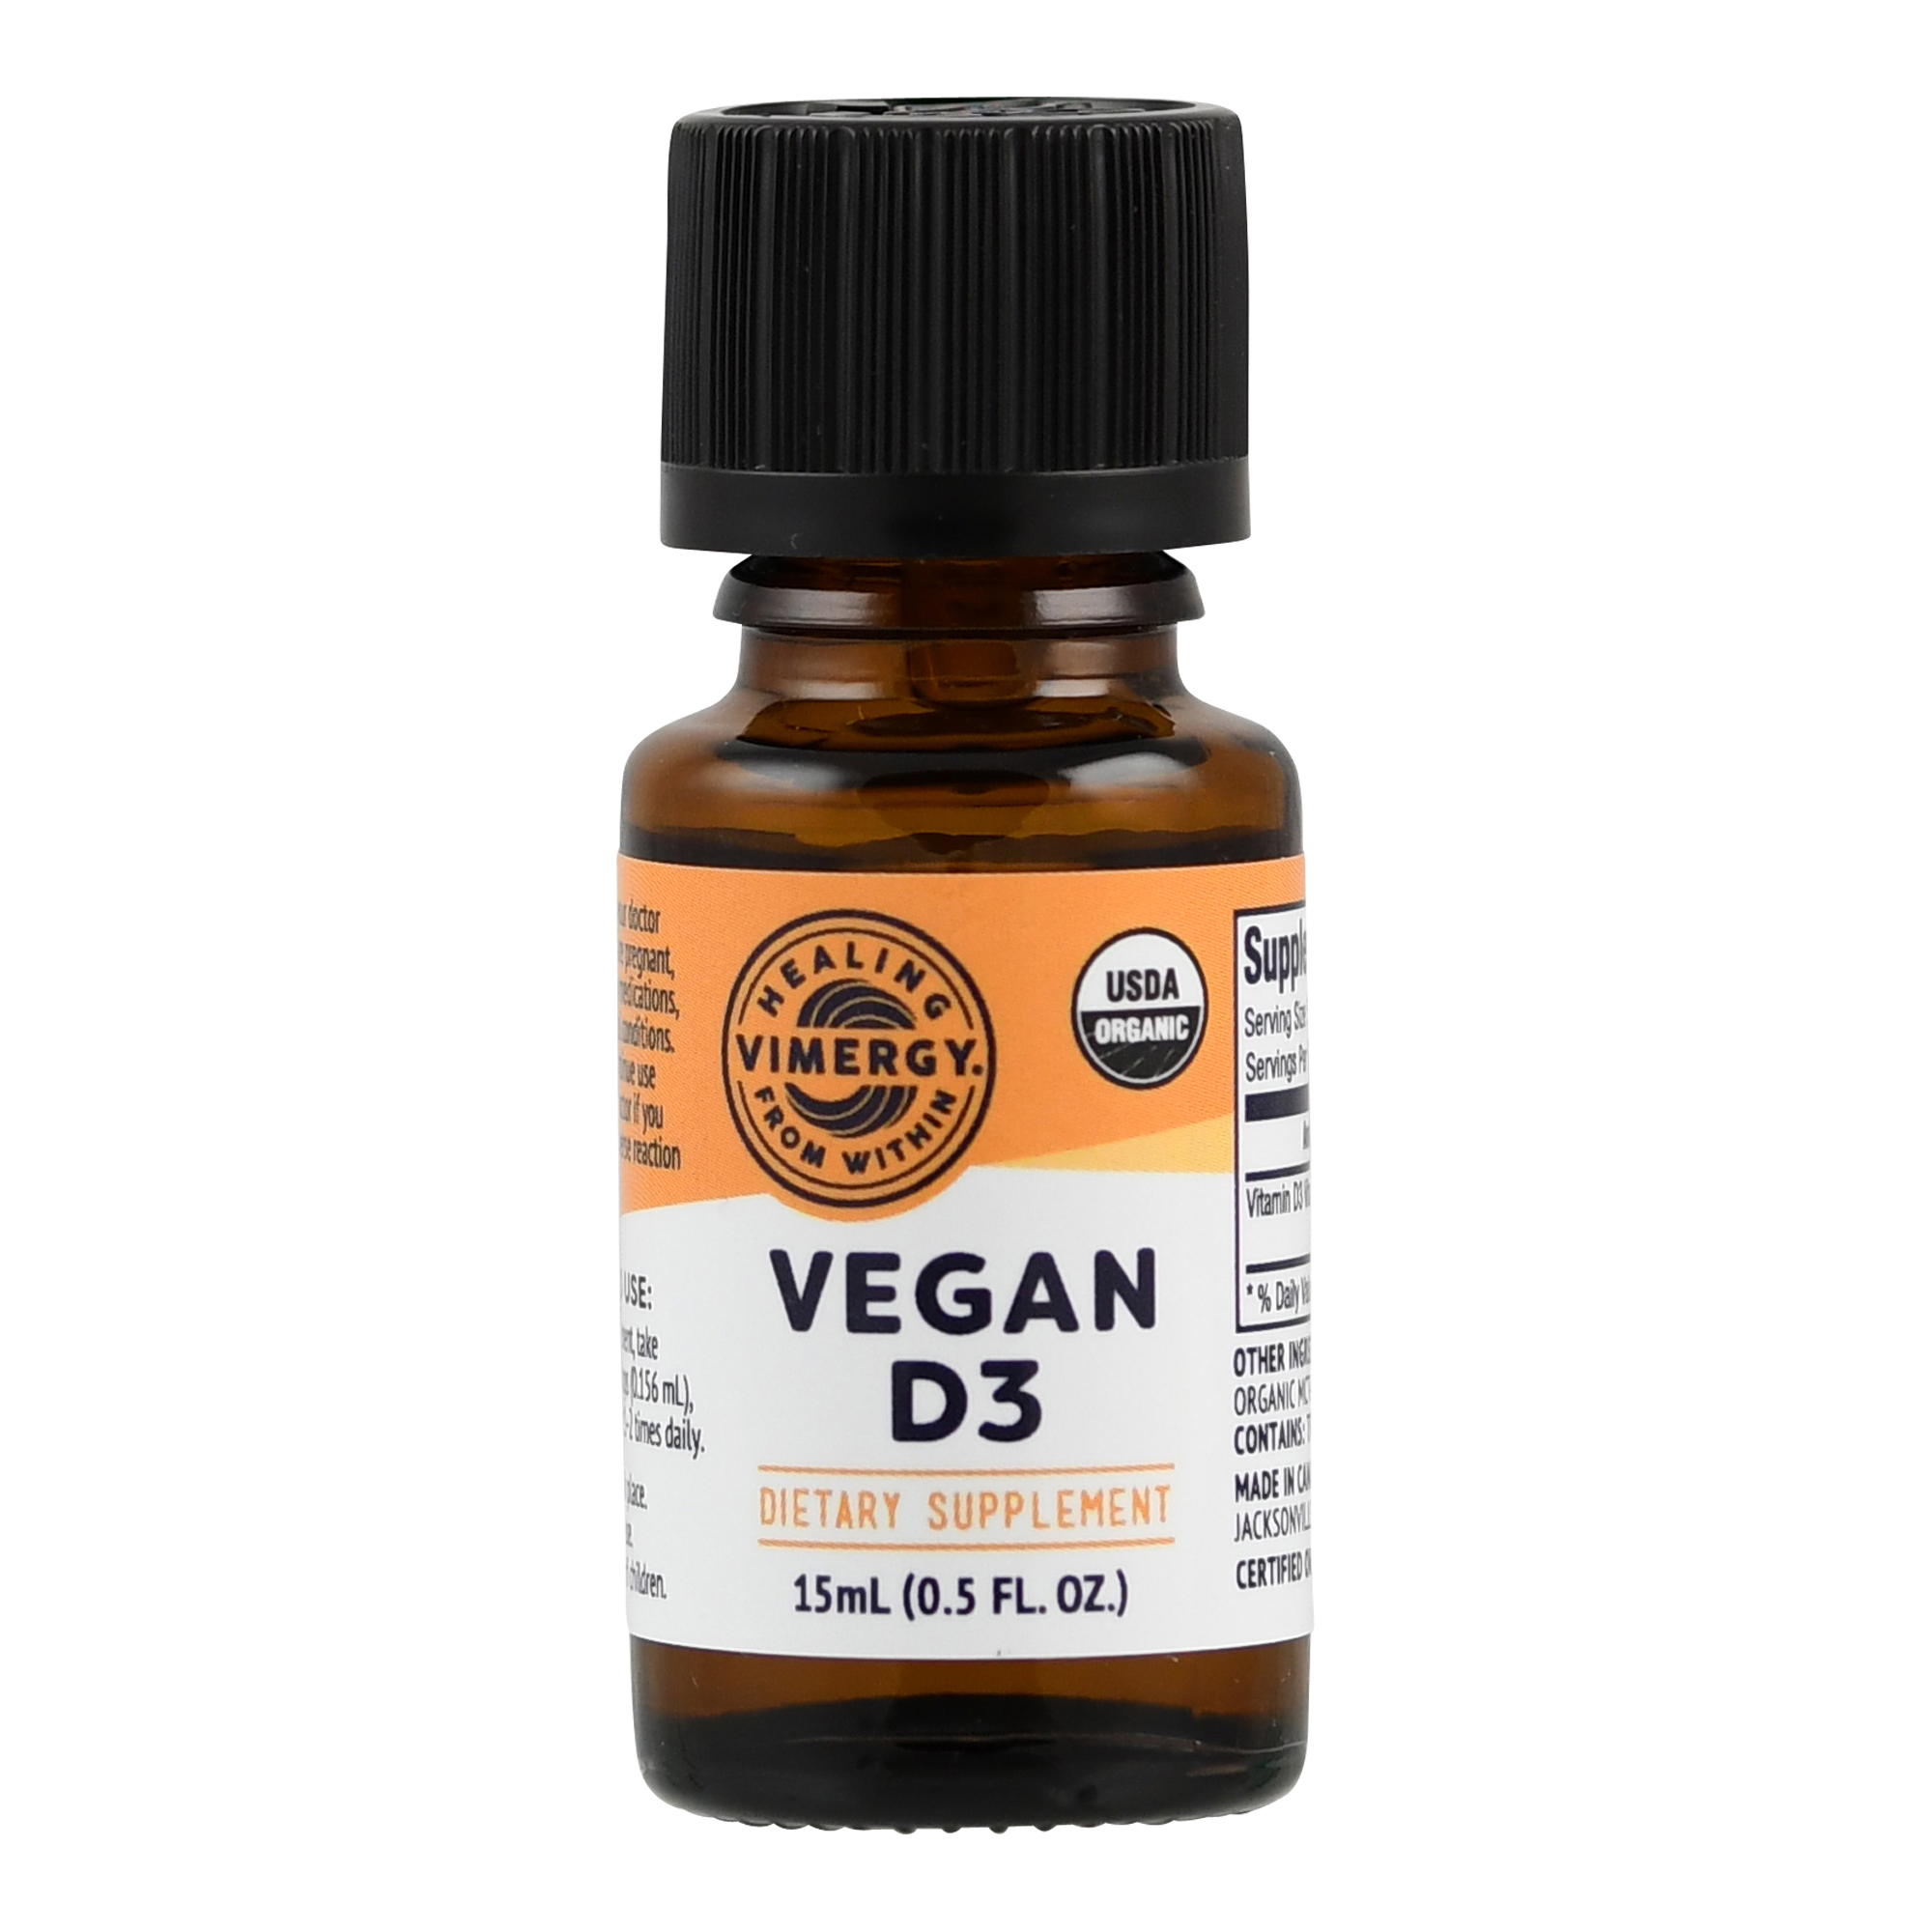 Vimergy Vegan Vitamin D3 flüssig